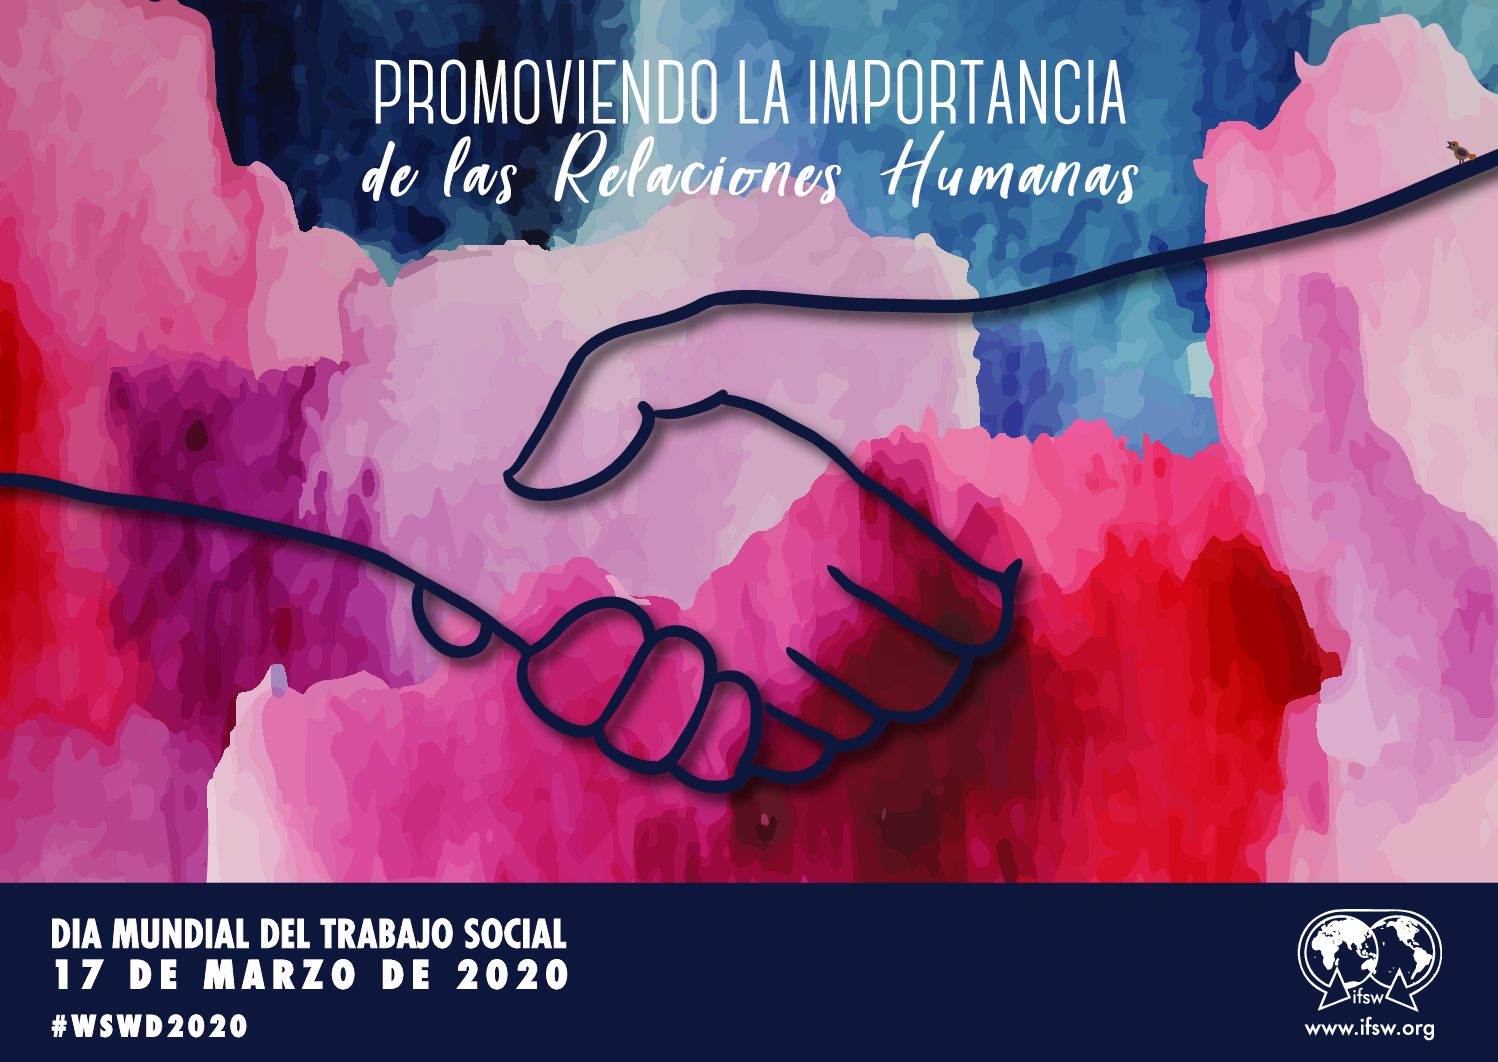 Día Mundial del Trabajo Social. 17 de Marzo de 2020. «Promoviendo la Importancia de las Relaciones Humanas»